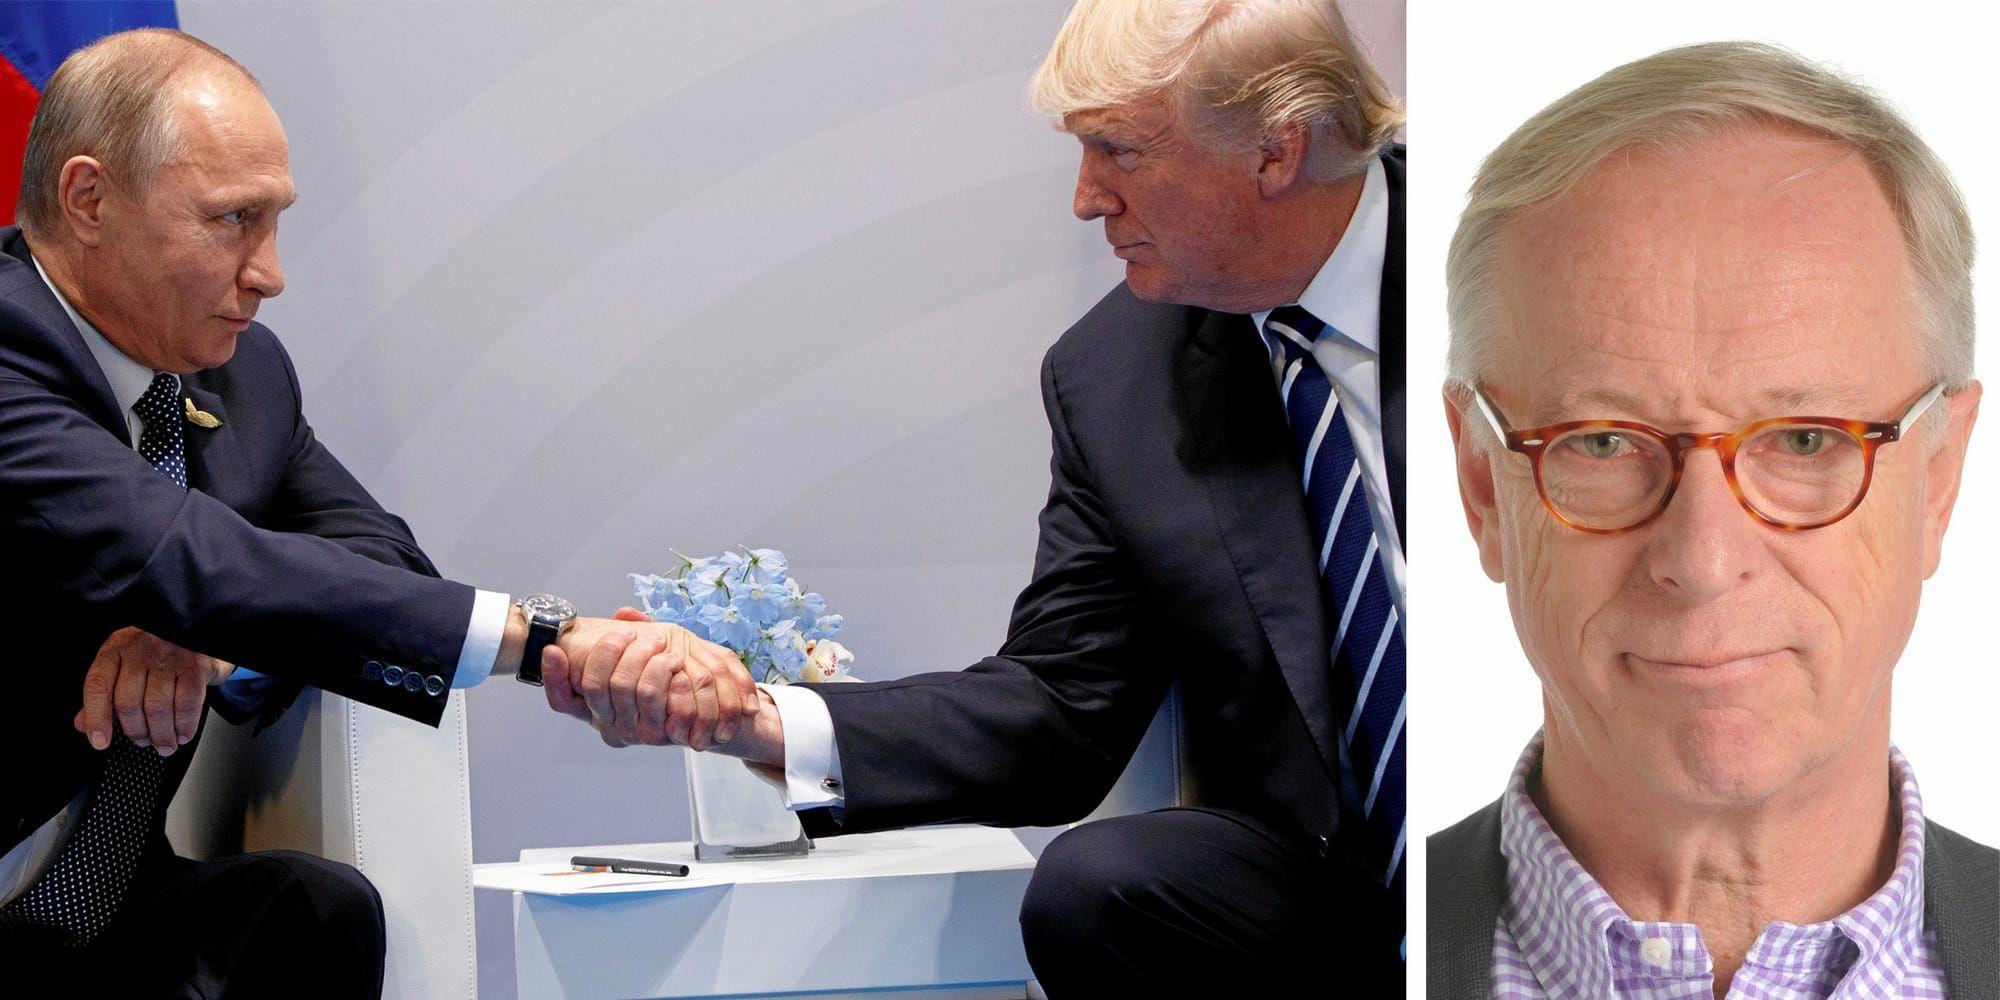 Toppmöten. Till Natotoppmötet kommer Trump med upprepade hot mot allierade. Till Putin med en förunderlig tilltro till den ryske despotens löften, skriver Gunnar Hökmark (M).